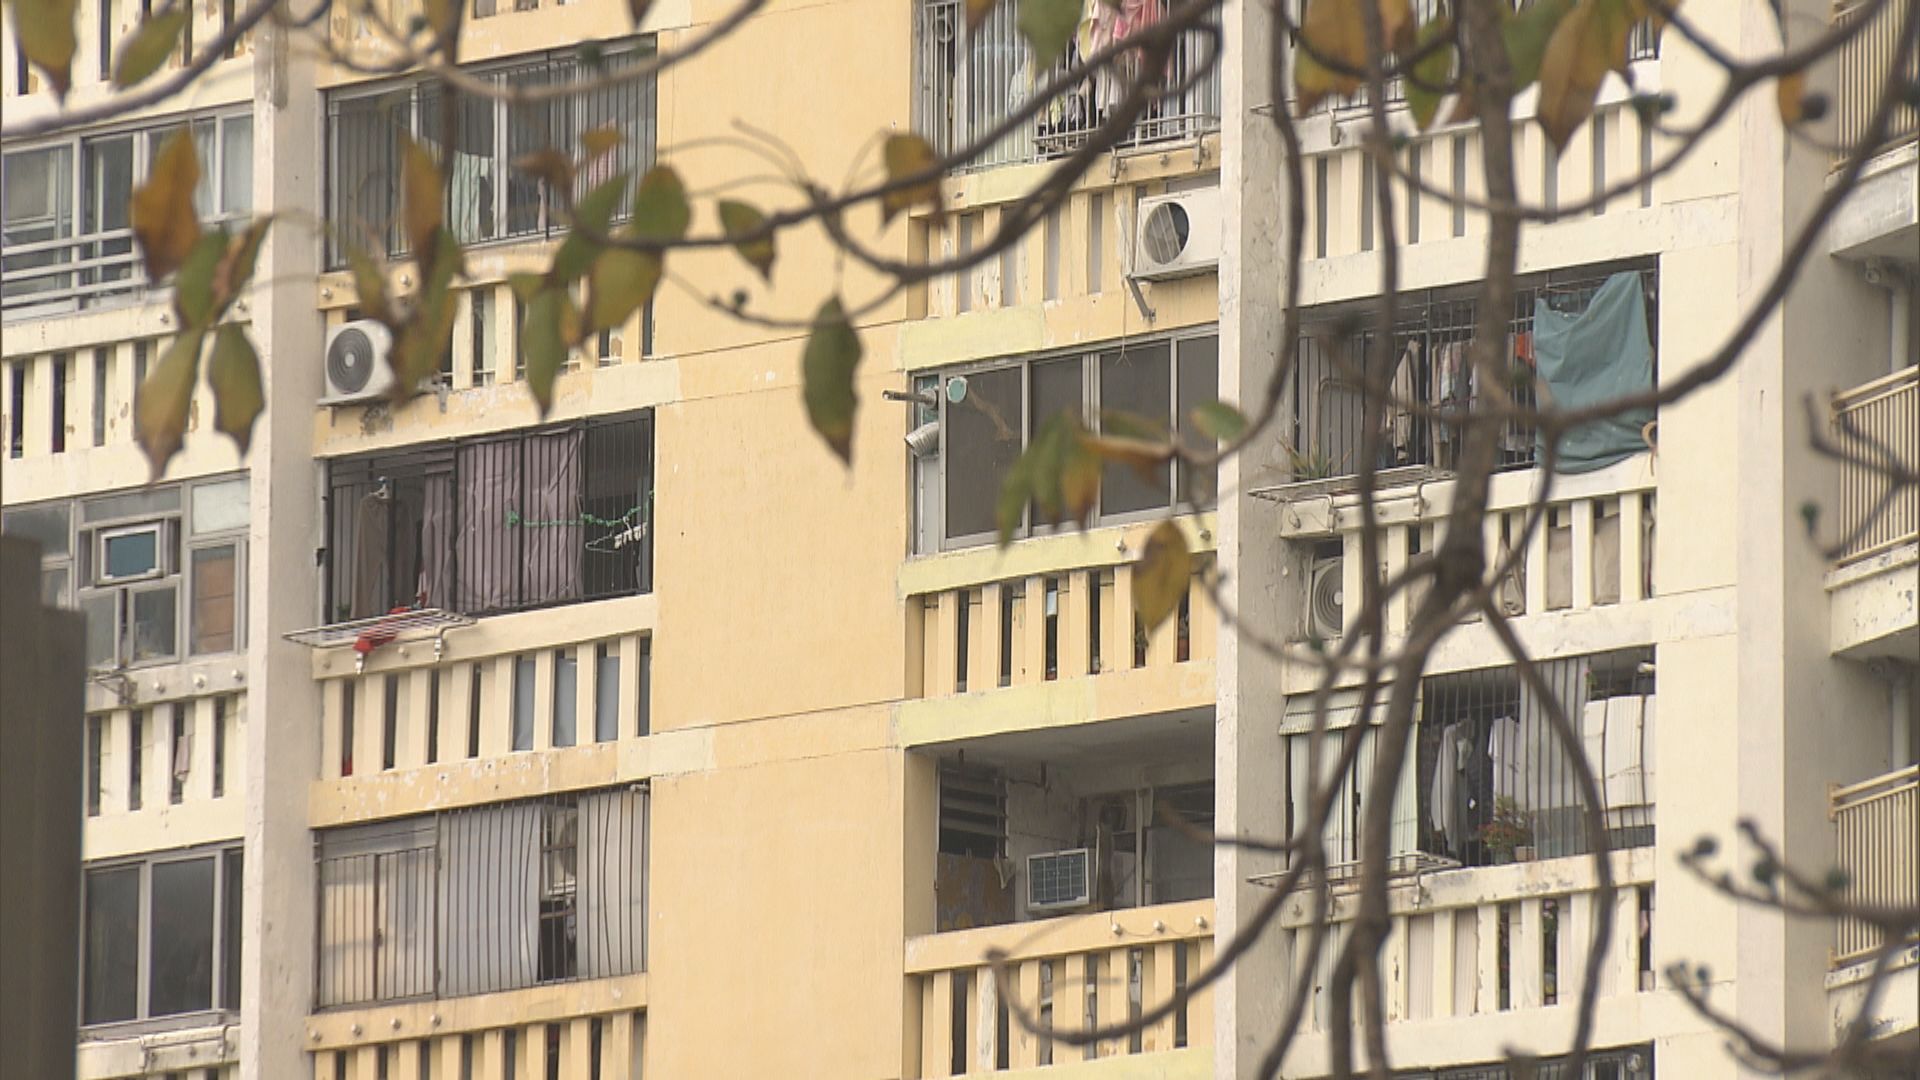 華富邨重建 居民認為賠償少 商戶不捨街坊客